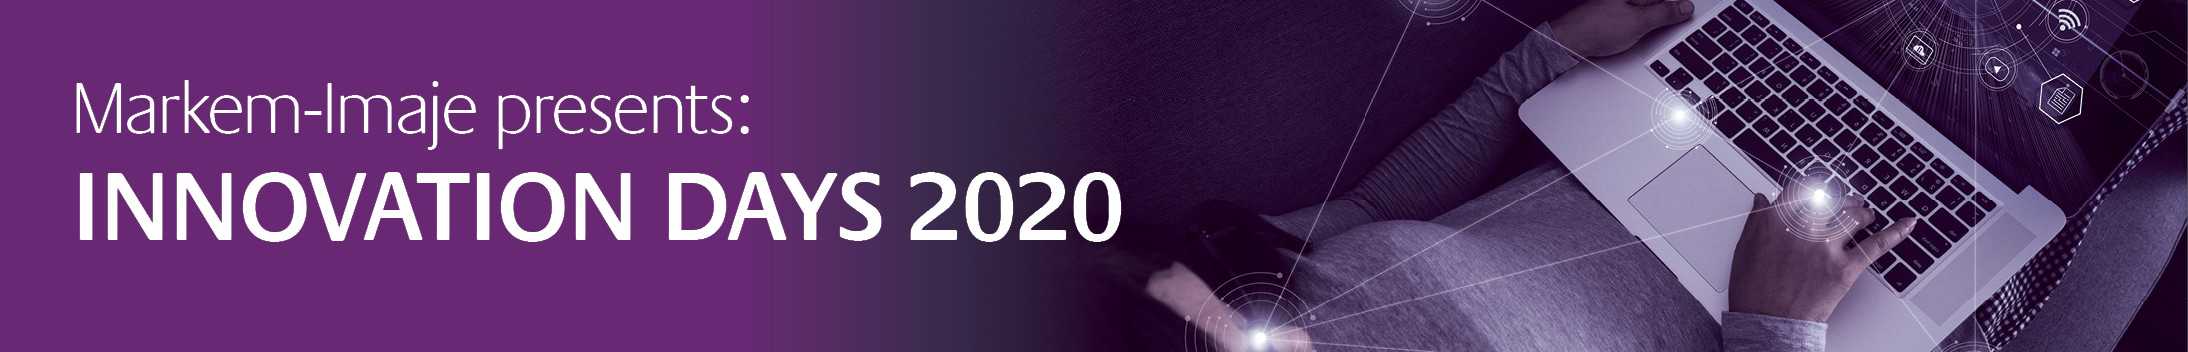 أيام مبتكرة 2020 بواسطة Markem Imaje